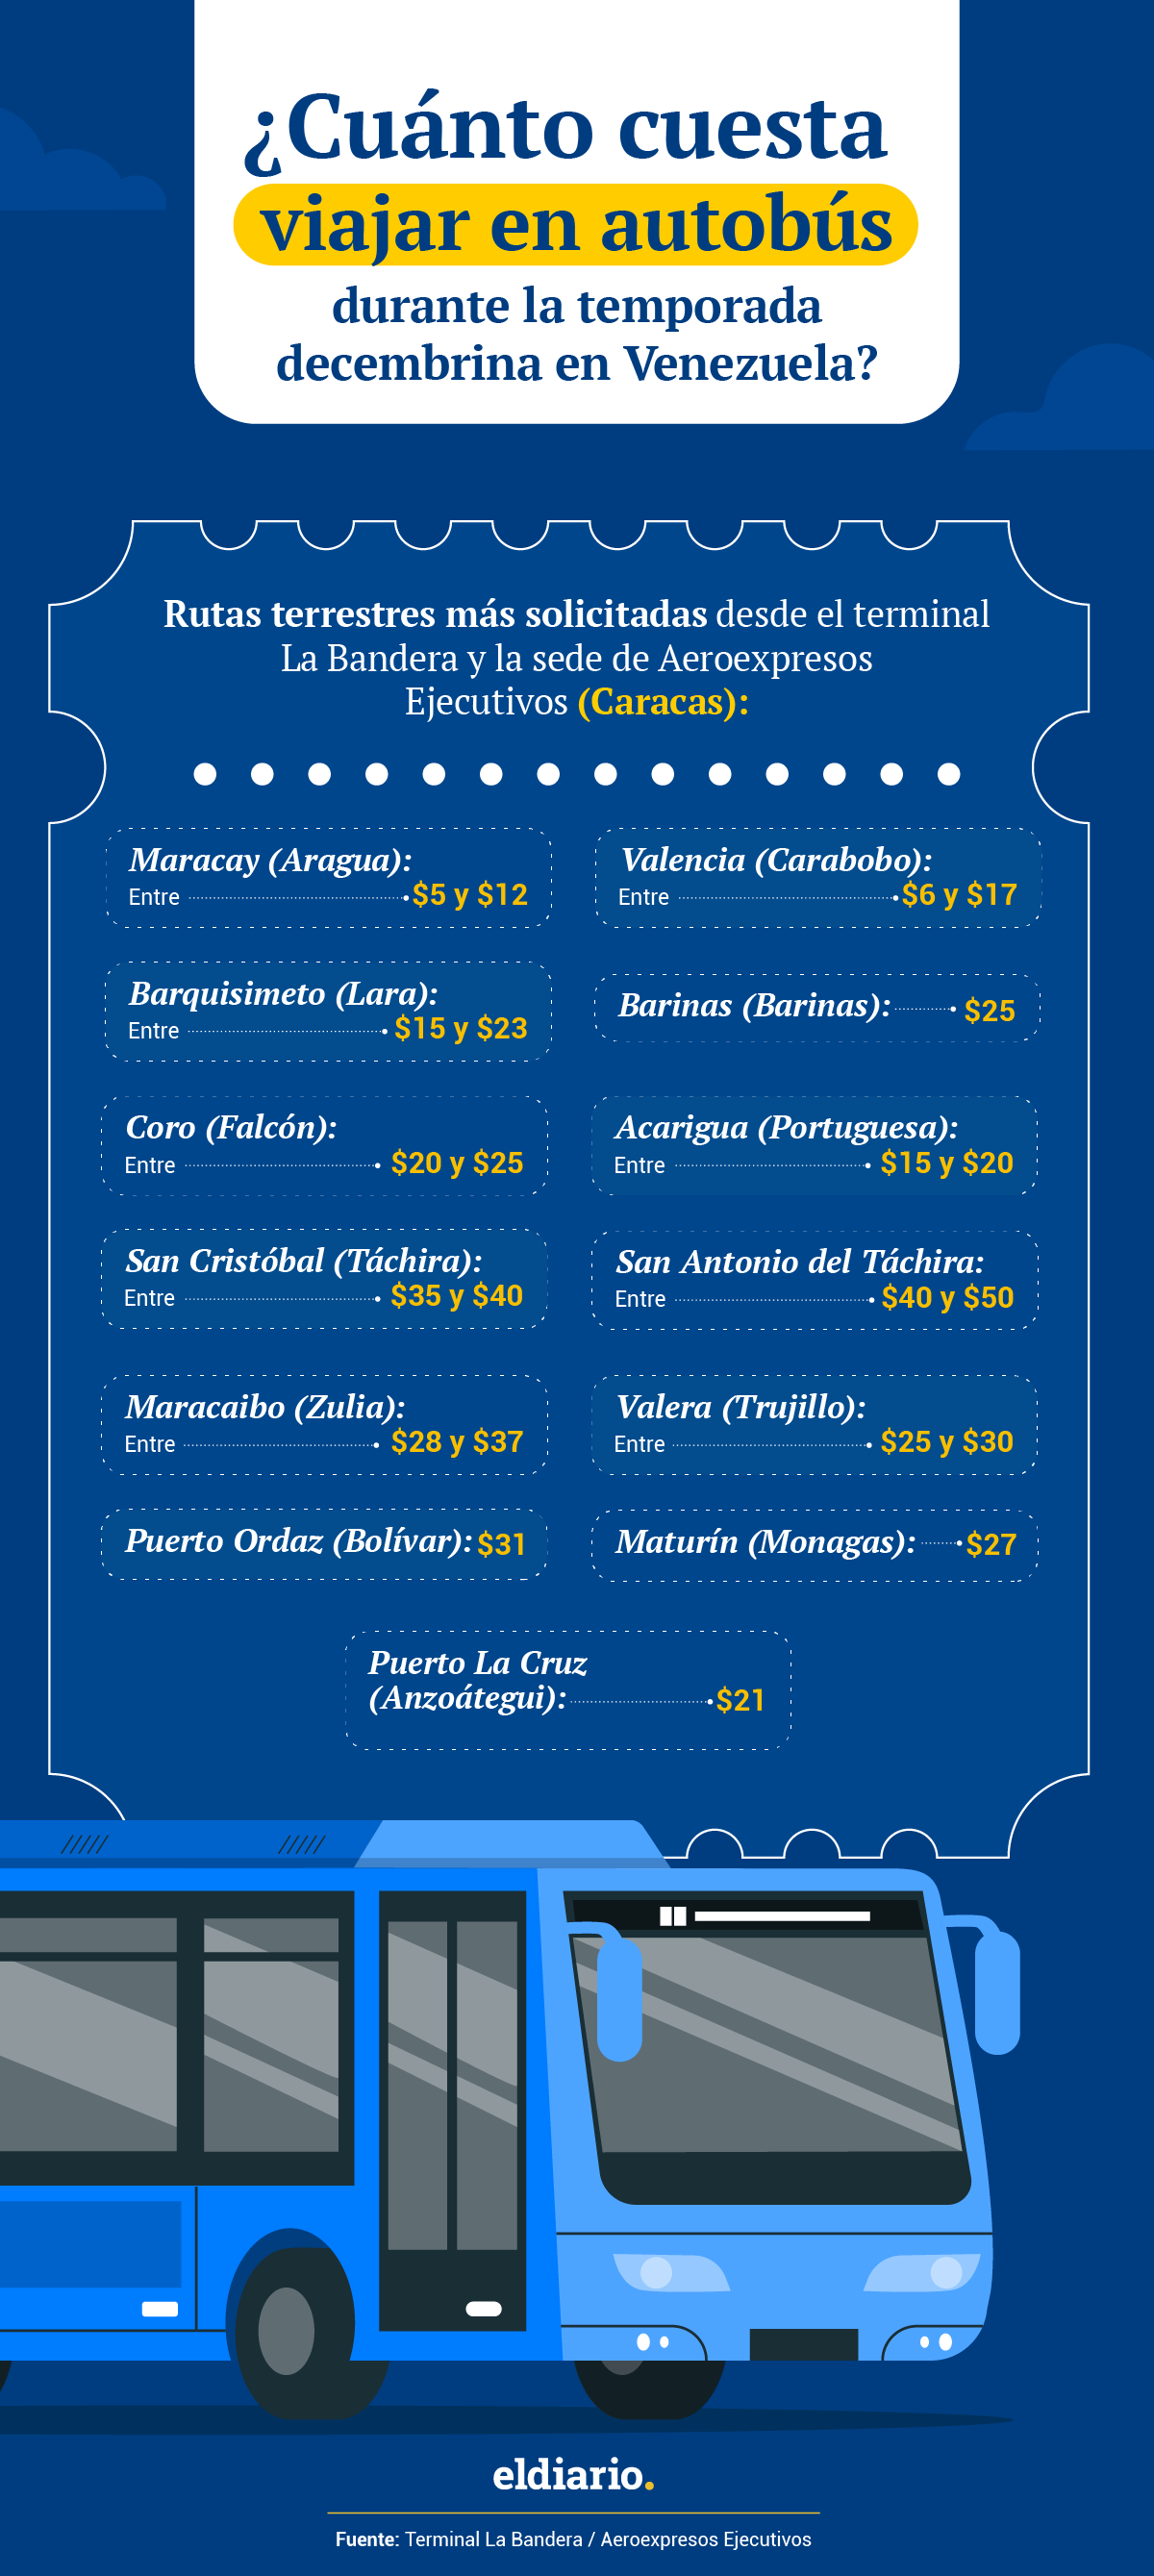 Cuáles son los precios de los pasajes para viajar durante la temporada decembrina en Venezuela